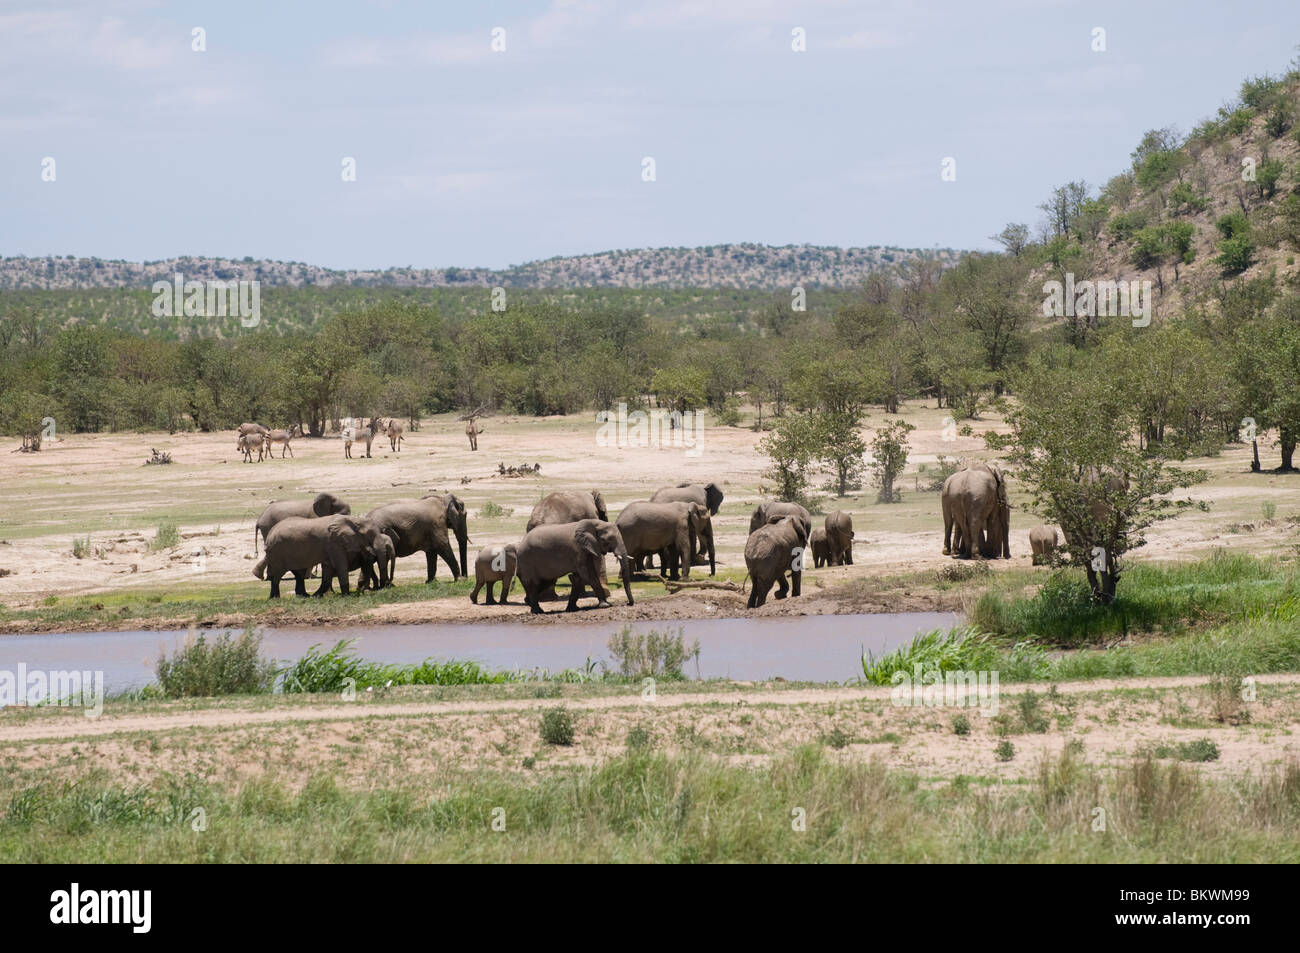 Elephants at a waterhole, Hobatere, Damaraland, Kunene region, Namibia Stock Photo